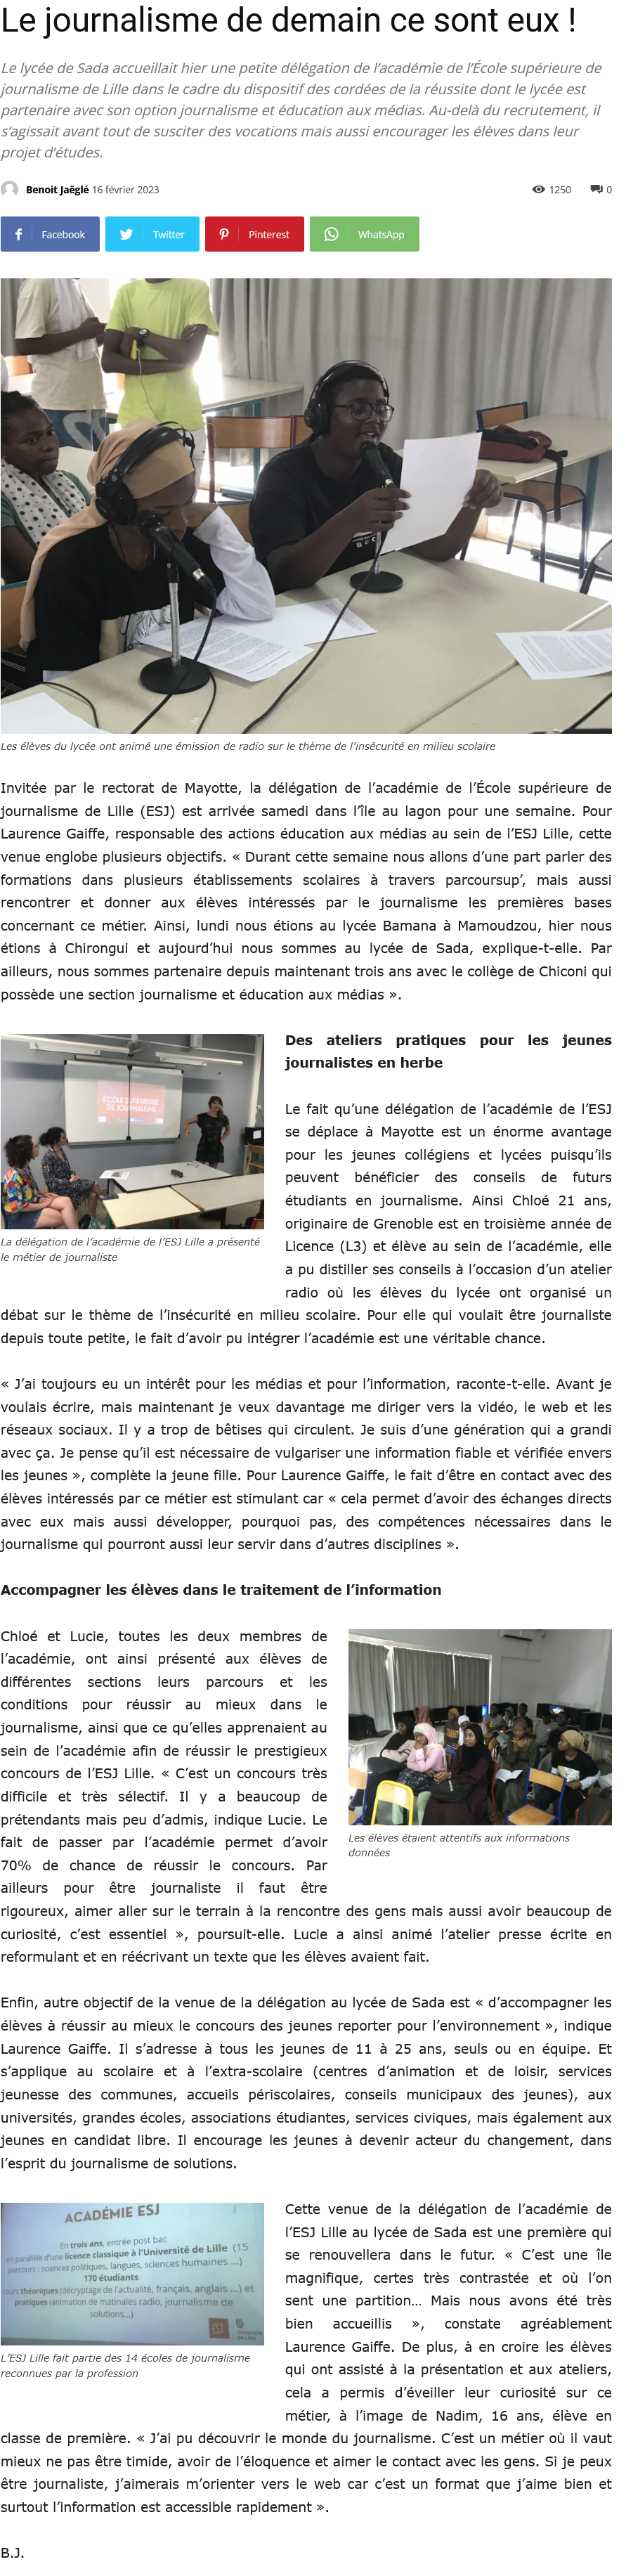 Copie d'écran de l'article du journal de Mayotte